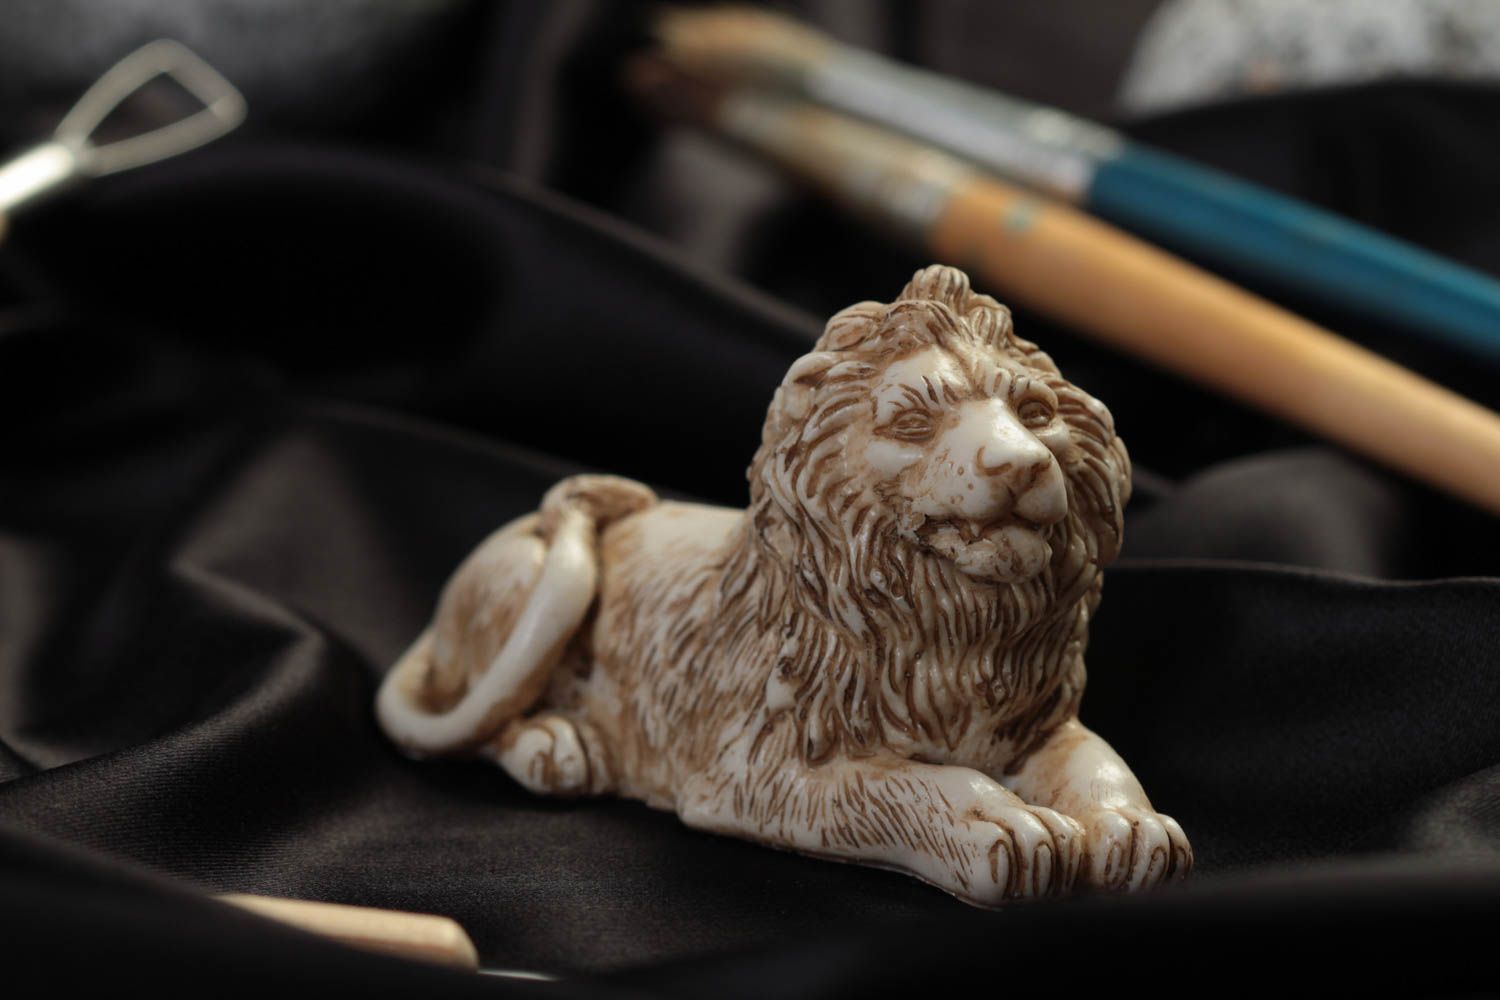 Миниатюрная статуэтка из полимерной смолы в виде лежащего льва ручной работы фото 1